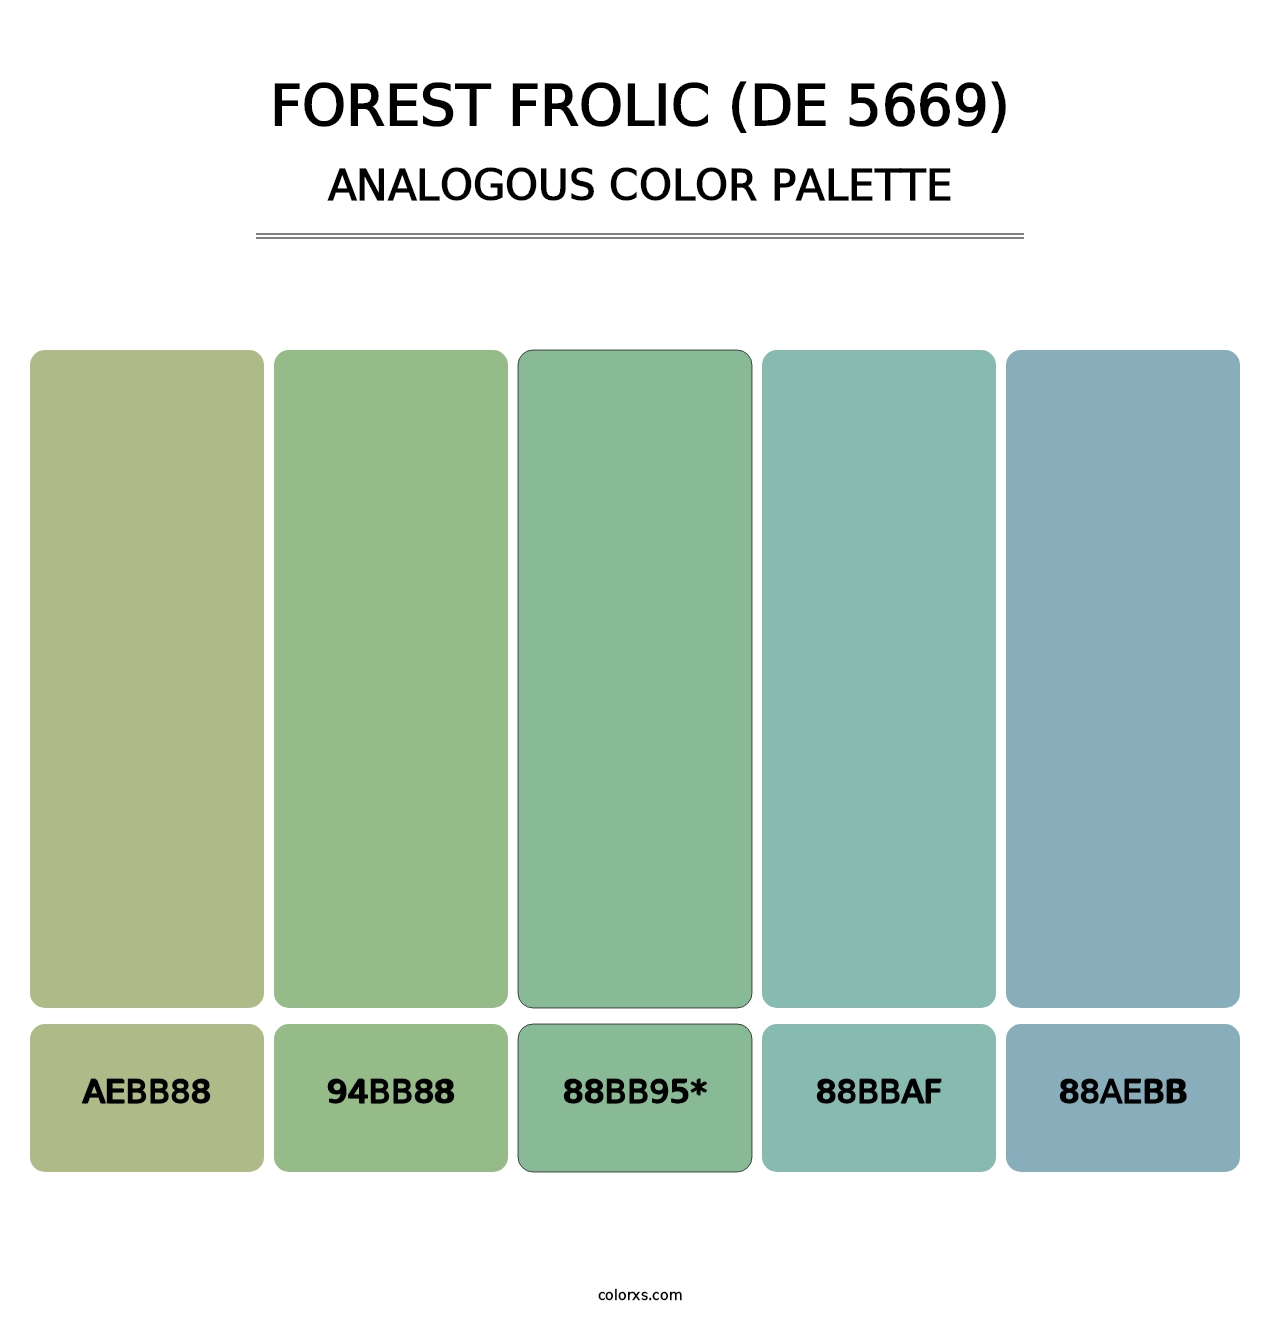 Forest Frolic (DE 5669) - Analogous Color Palette